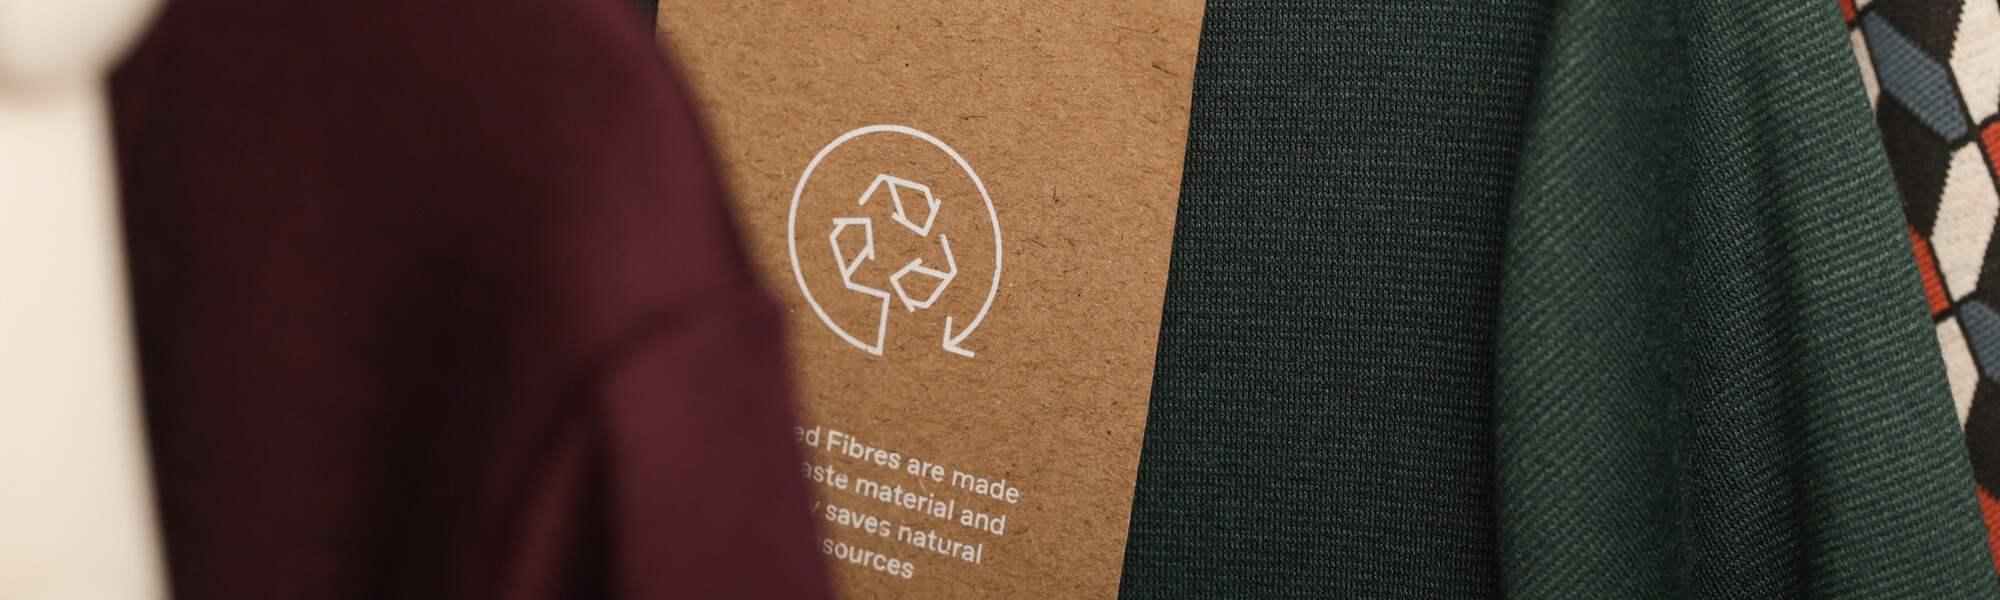 L'immagine mostra il cartellino di un vestito fatto di materiali riciclati, come buona pratica per una moda sostenibile.